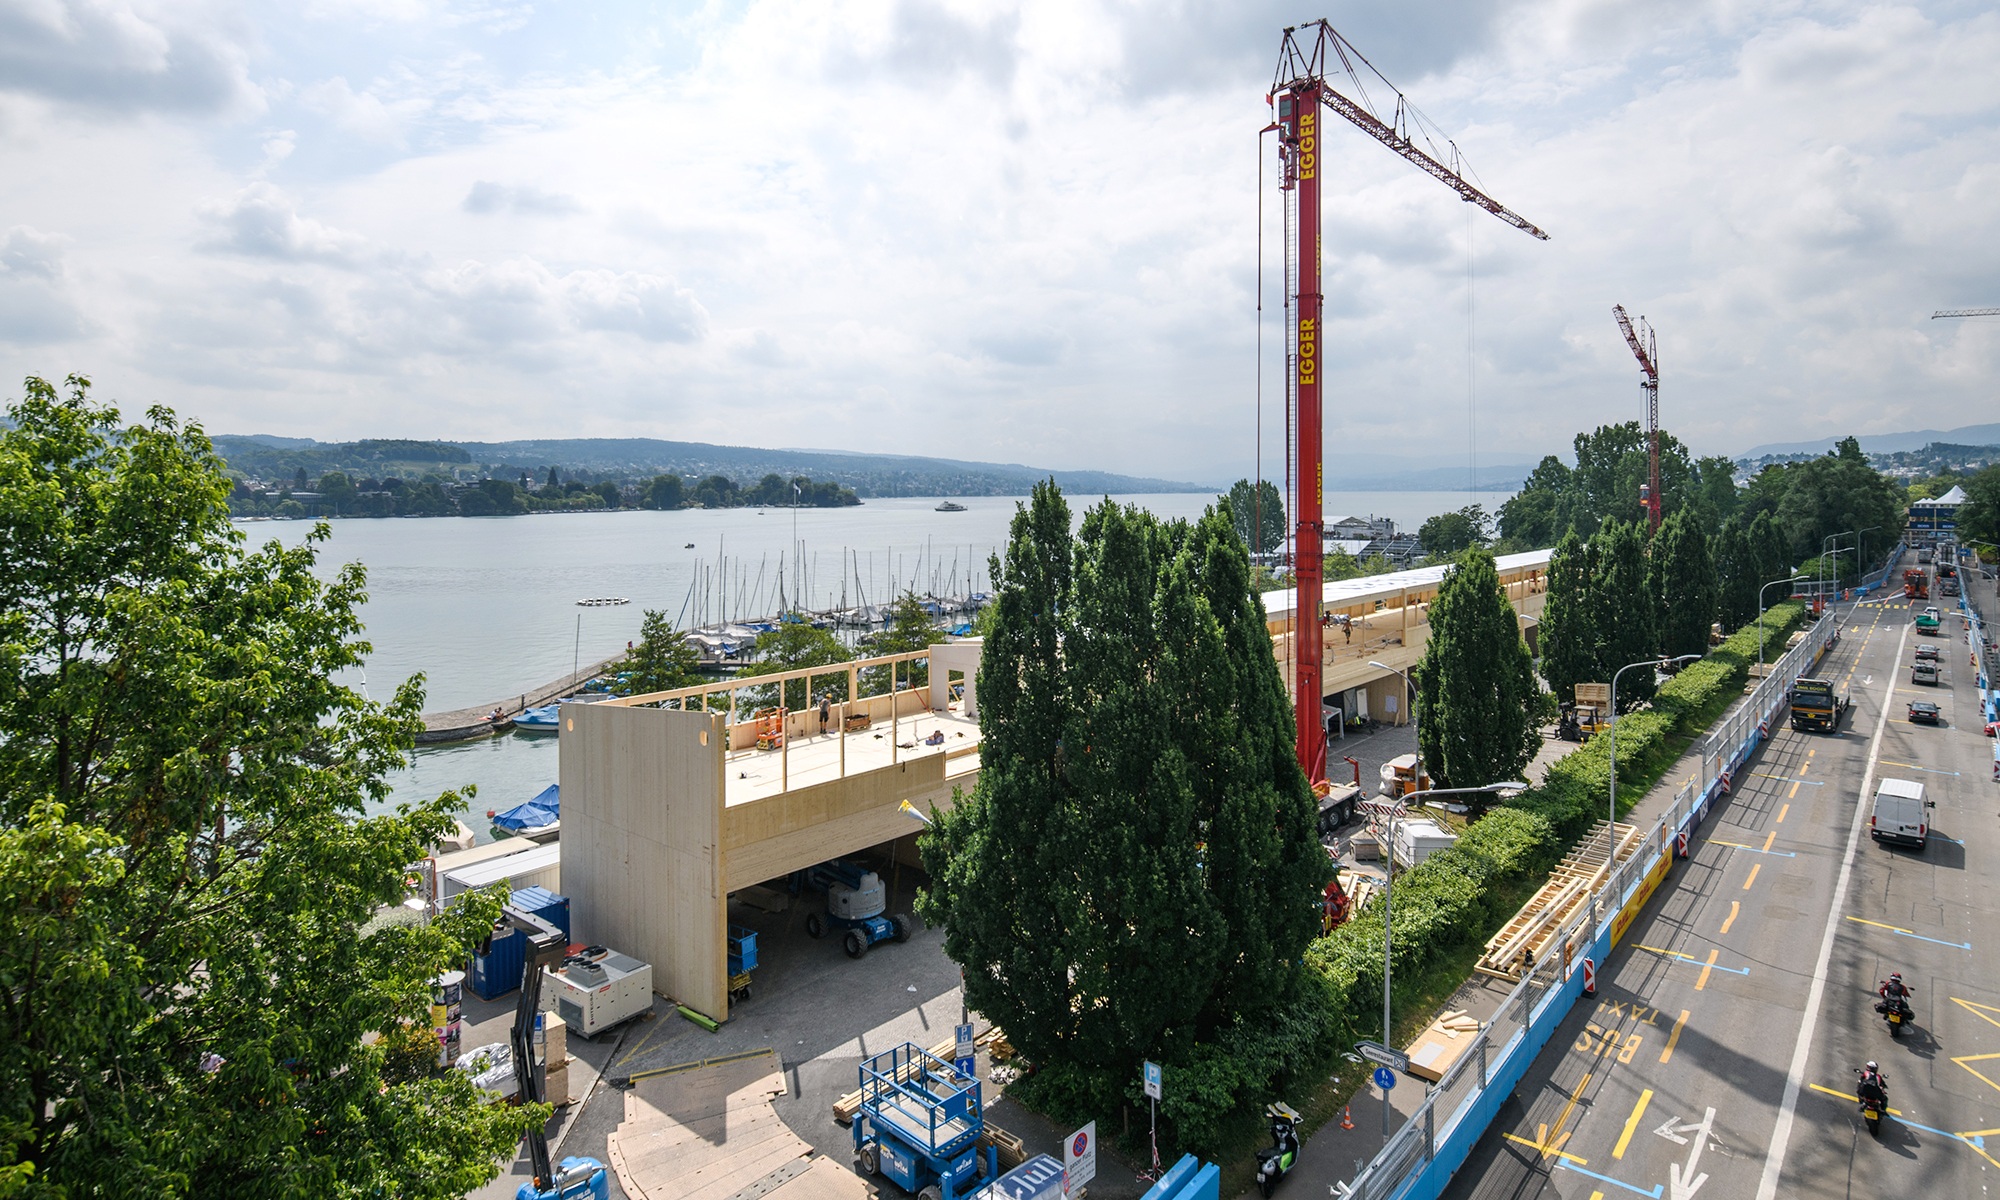 La prise de vue montre l’installation de la formule E à Zurich. En arrière-plan, on voit le lac et l’entrée du port juste derrière le bâtiment événementiel.